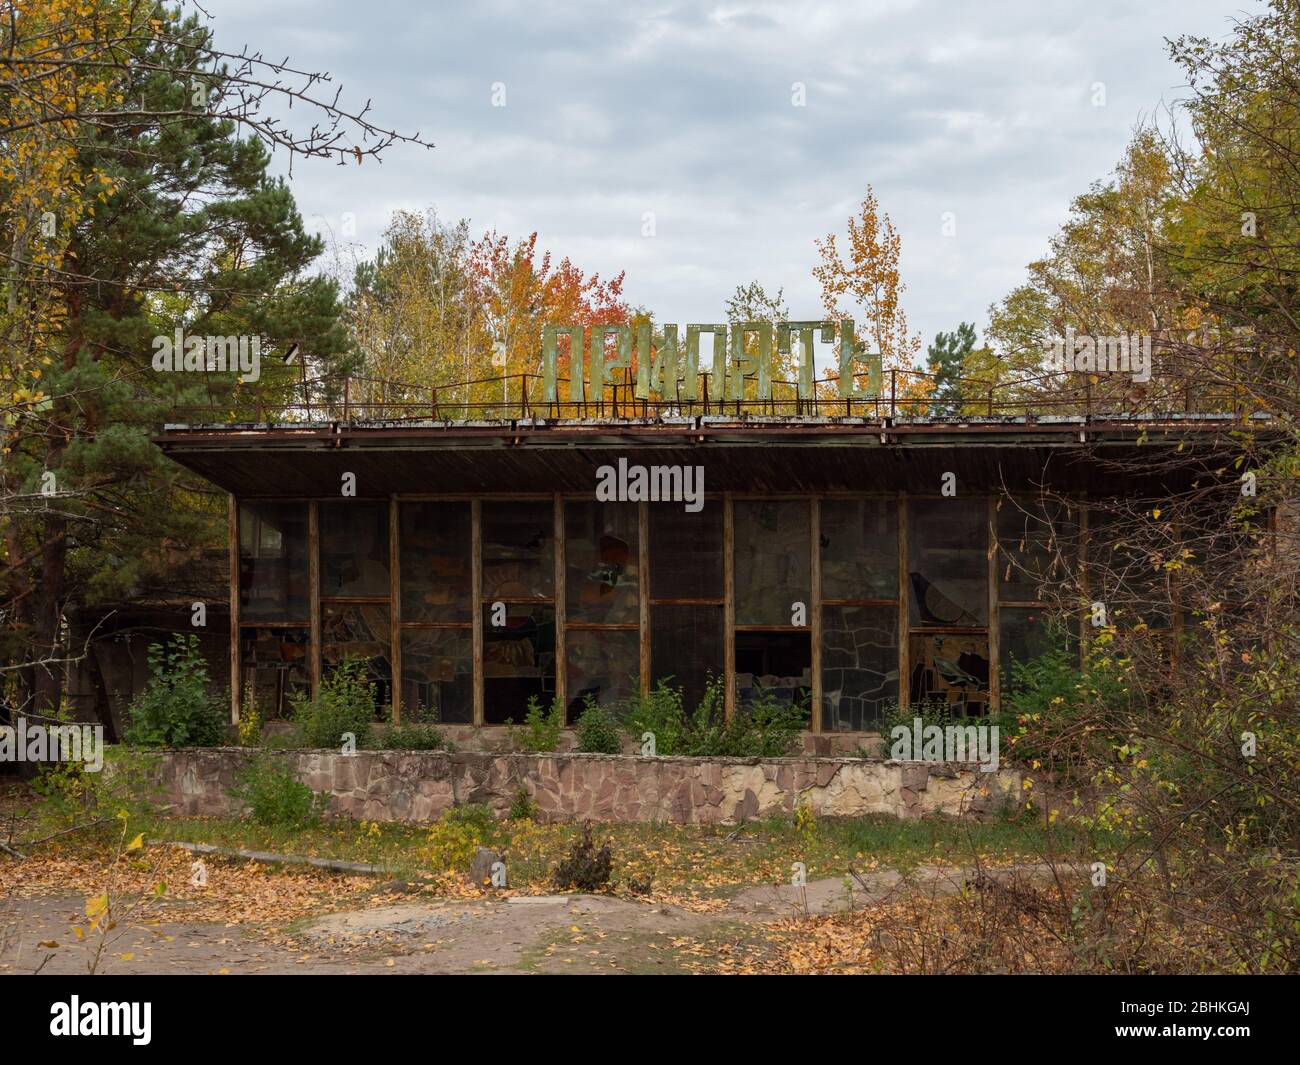 Café in verlassenen Geisterstadt Pripyat, post-apokalyptische Stadt, Herbstsaison in Tschernobyl Ausschlusszone, Ukraine. Inschrift auf russisch: 'Cafe Pripjat Stockfoto